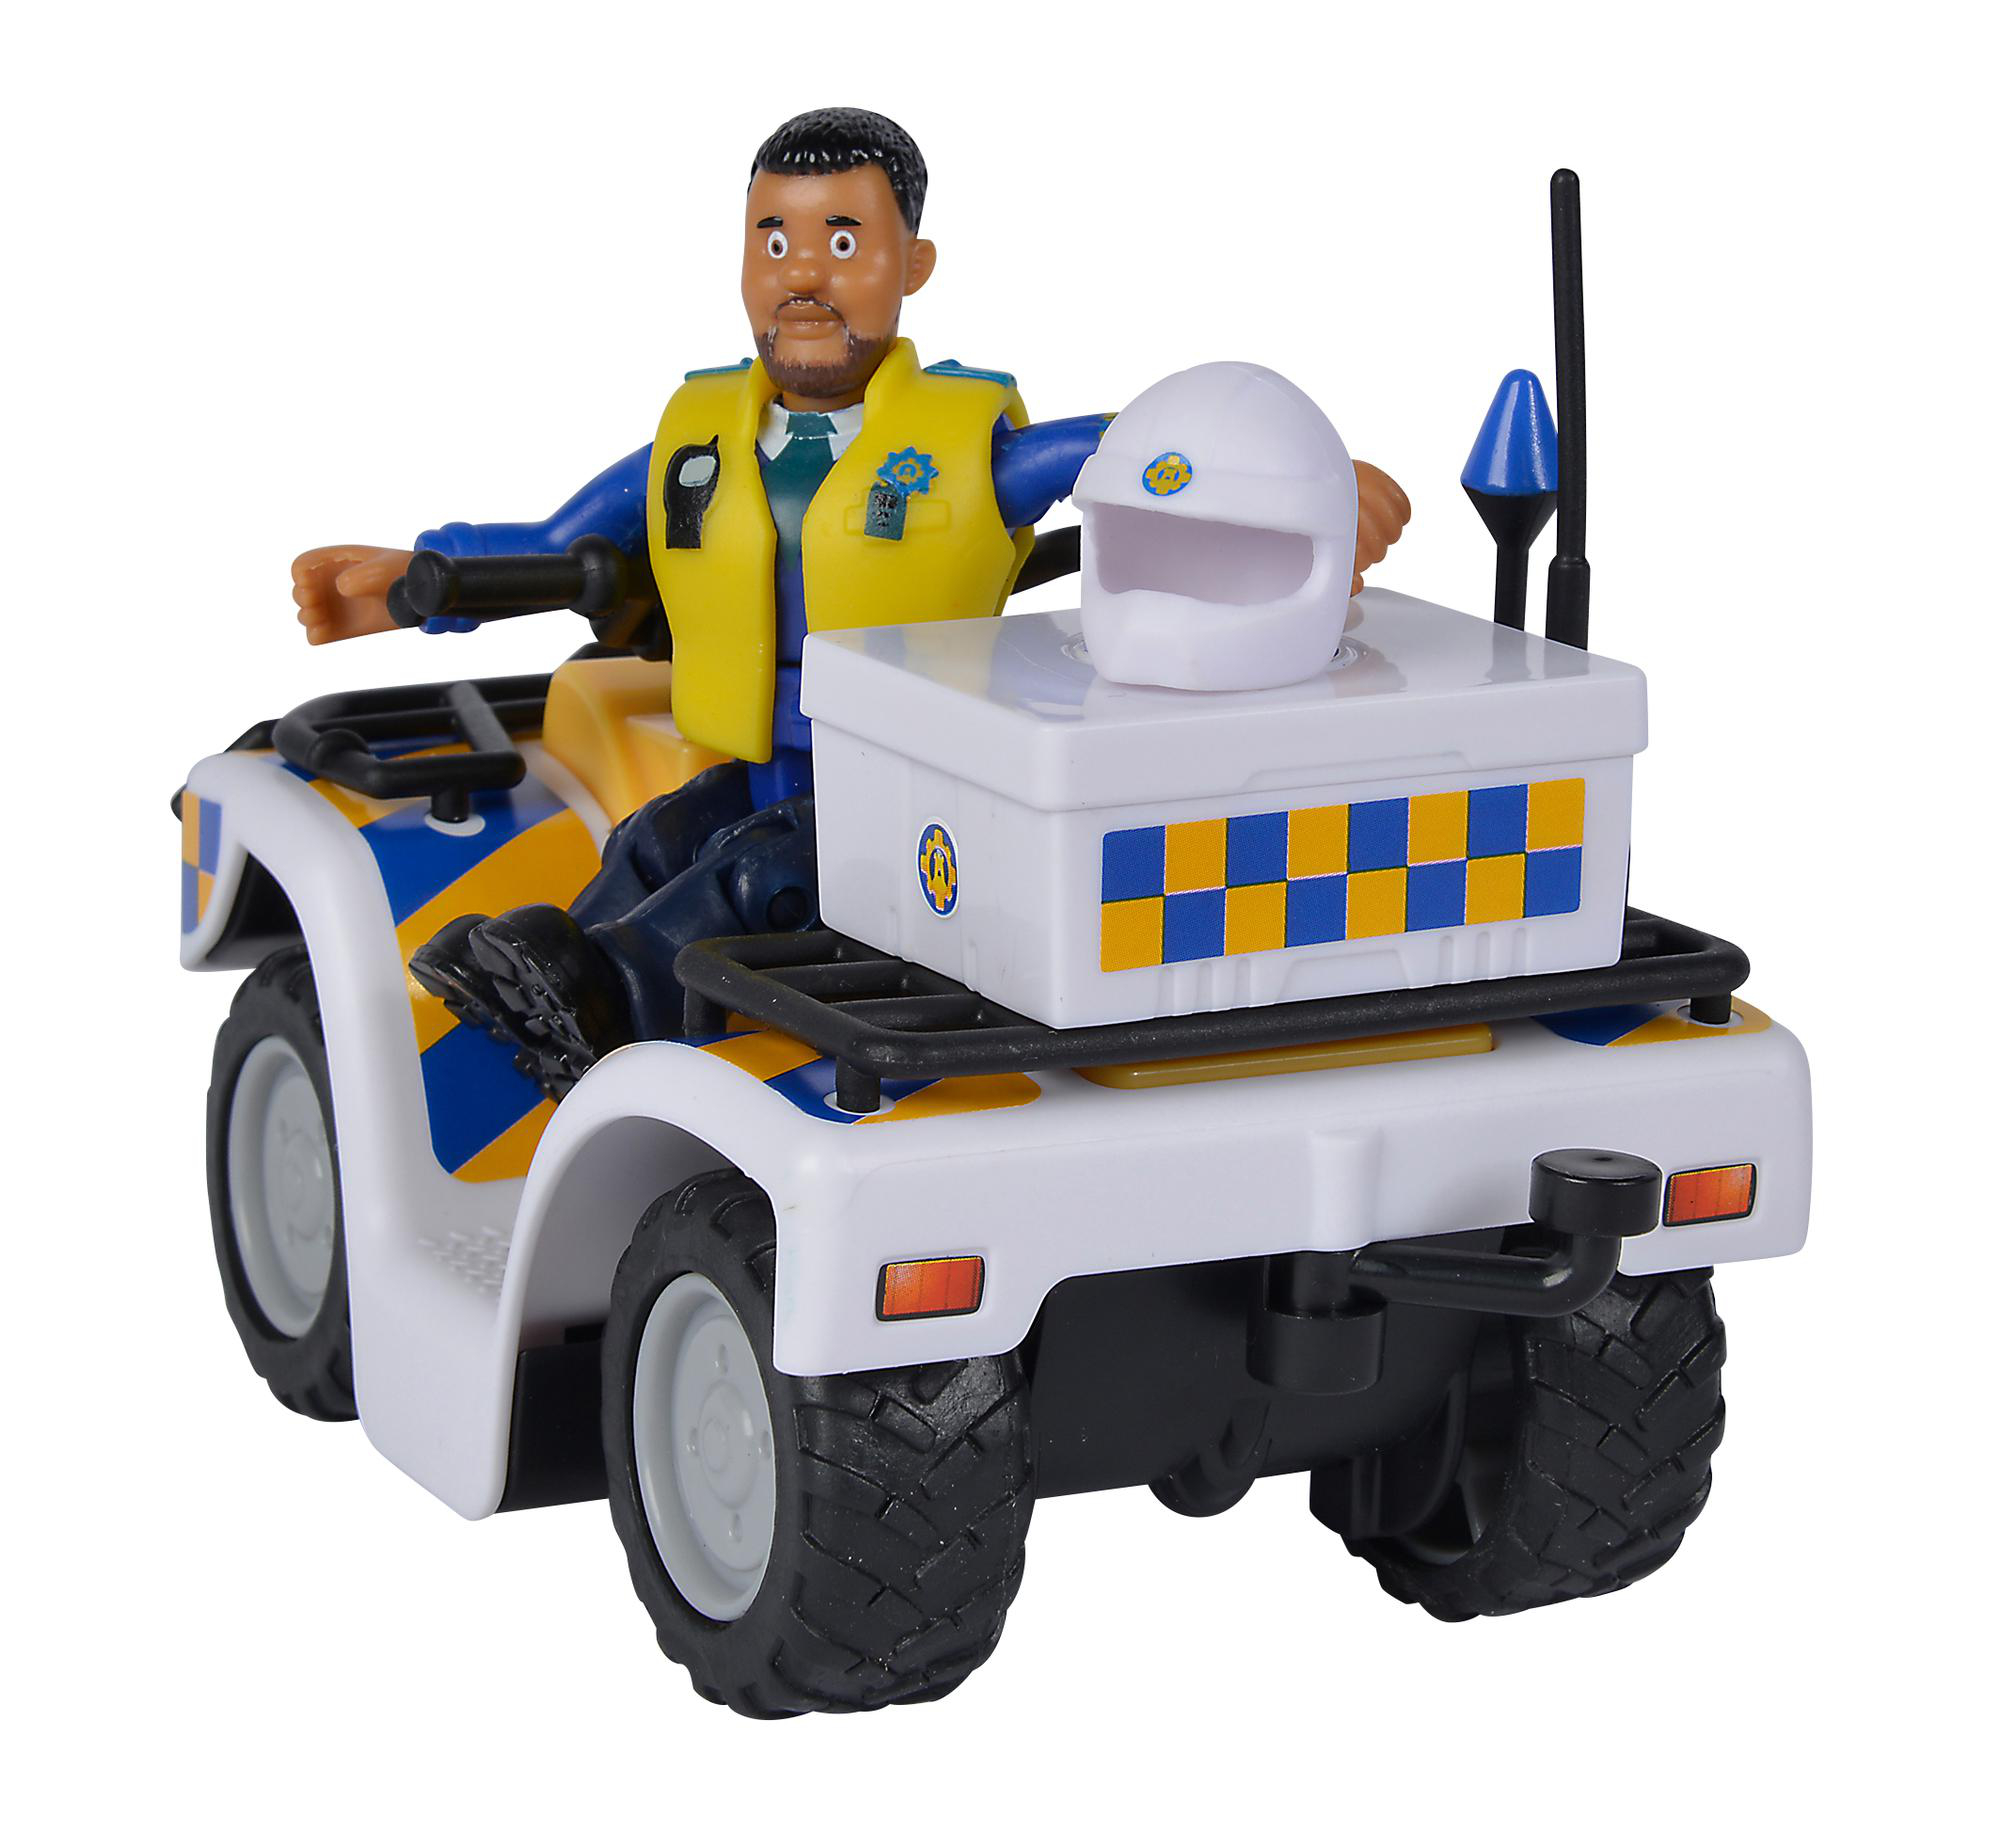 Spielset Quad Figur TOYS Mehrfarbig SIMBA Polizei Feuerwehrmann Sam mit